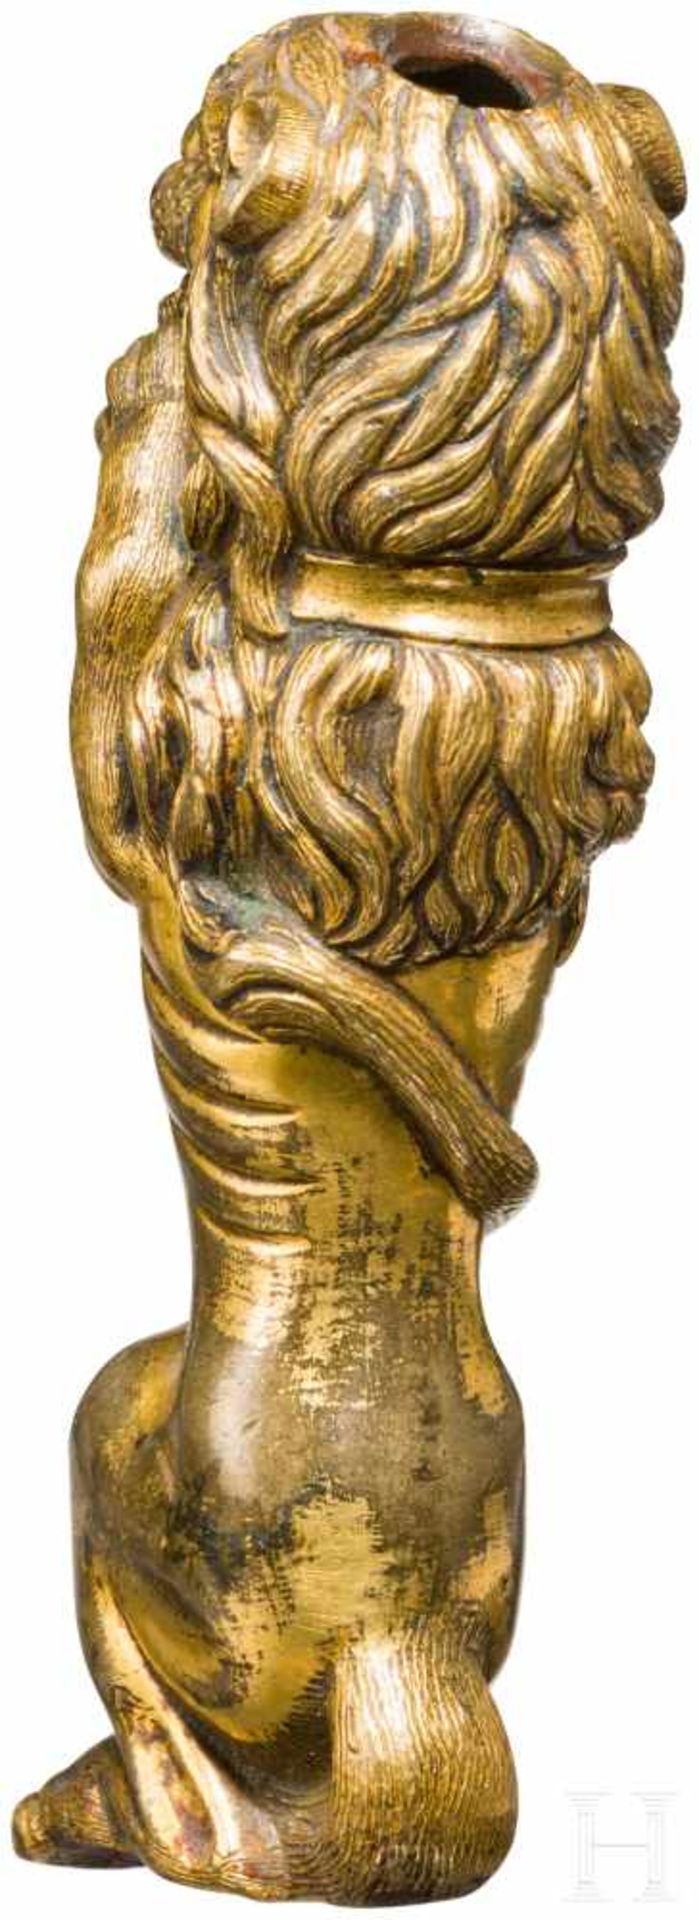 Vergoldeter Griff in Löwenform, flämisch, um 1700Vollplastisch gearbeiteter Griff eines Luxus- - Bild 3 aus 3